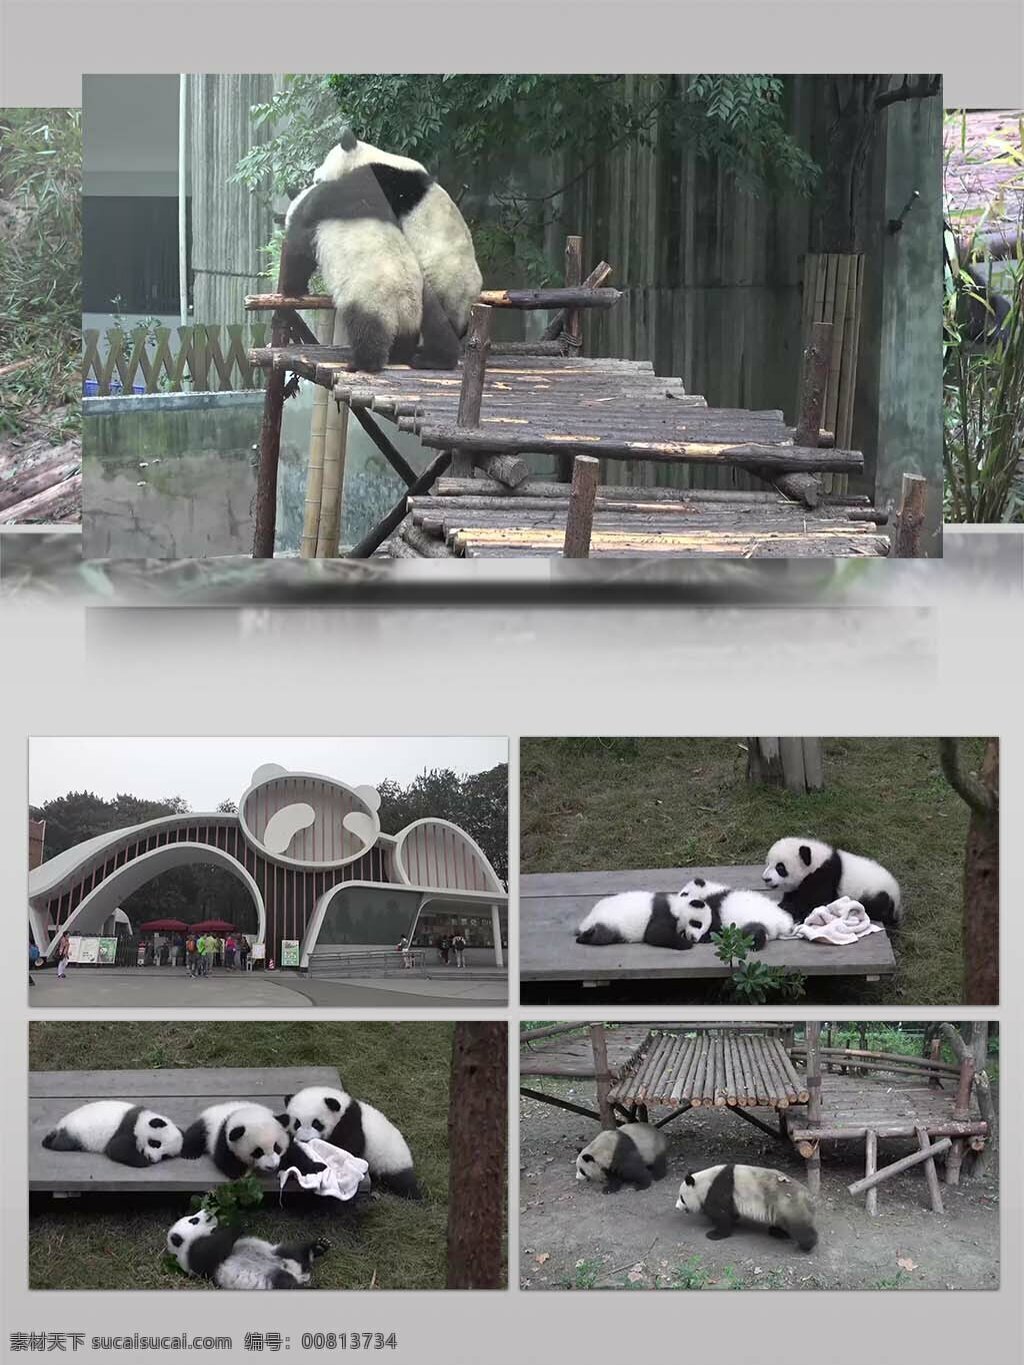 4k 超 清 实拍 成都 熊猫 繁育 基地 视频 国宝大熊猫 野生大熊猫 野外大熊猫 野外风景 野外旅游